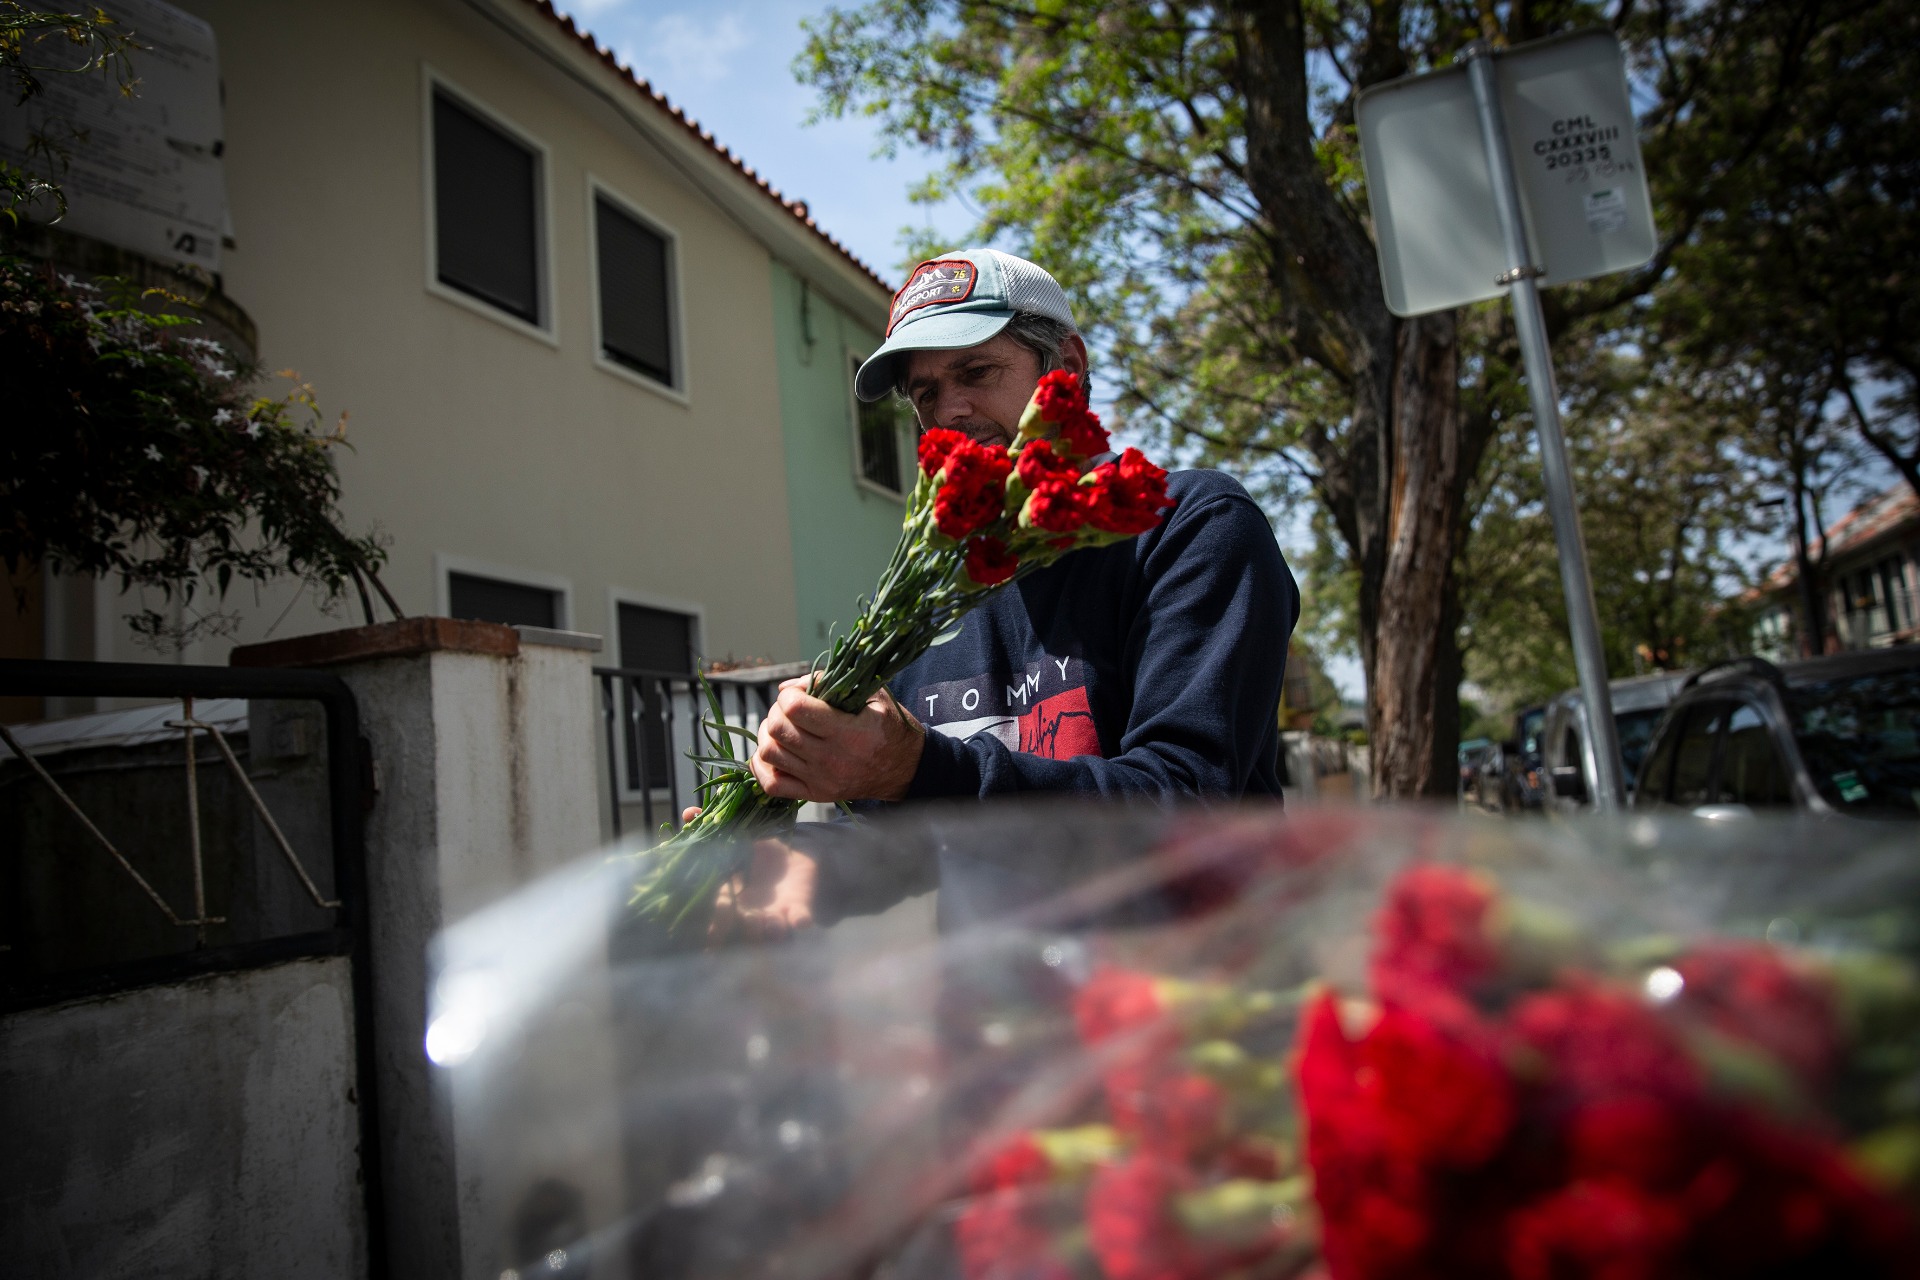 Em Benfica, a Junta de Freguesia decidiu distribuir cravos pelas caixas de correio para assinalar o 25 de Abril